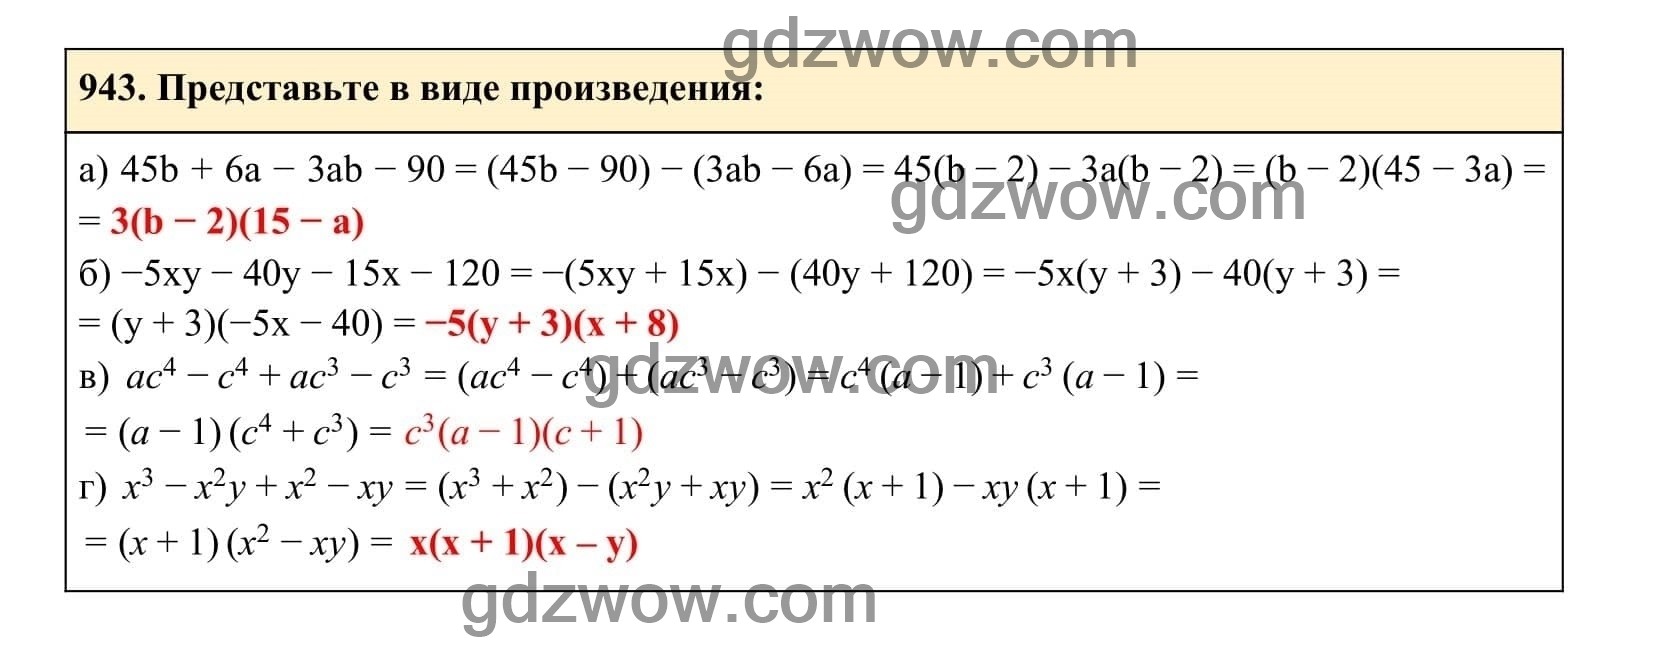 Упражнение 943 - ГДЗ по Алгебре 7 класс Учебник Макарычев (решебник) - GDZwow